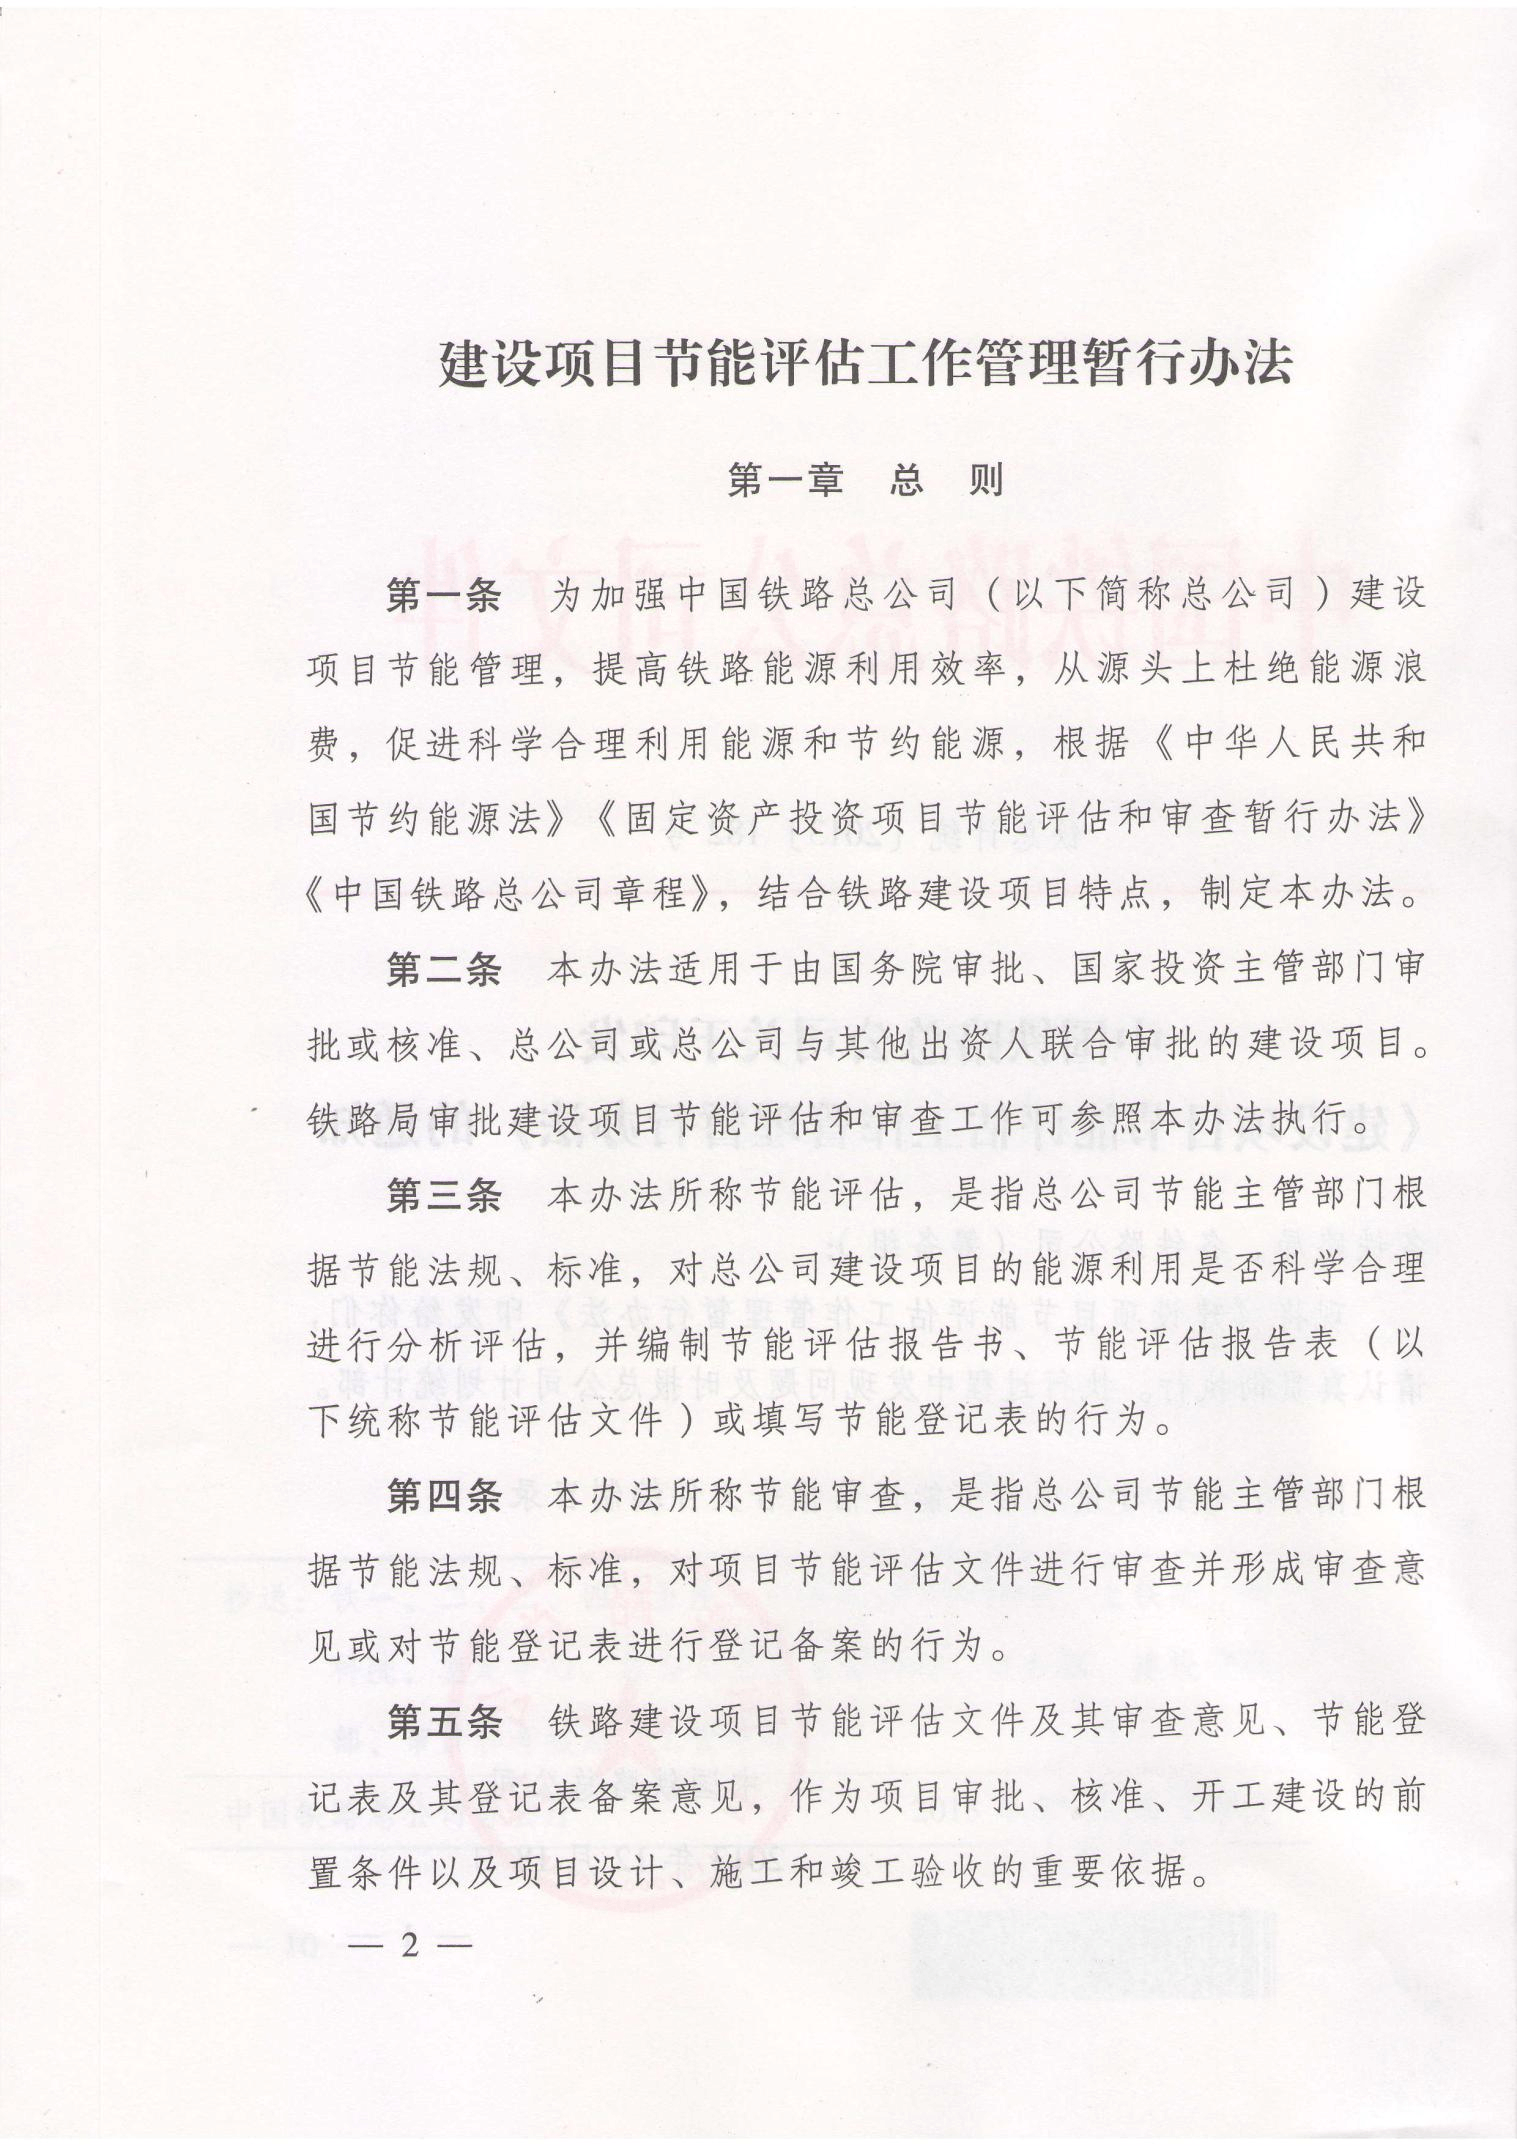 中国铁路总公司关于印发《建设项目节能评估工作管理暂行办法》的通知